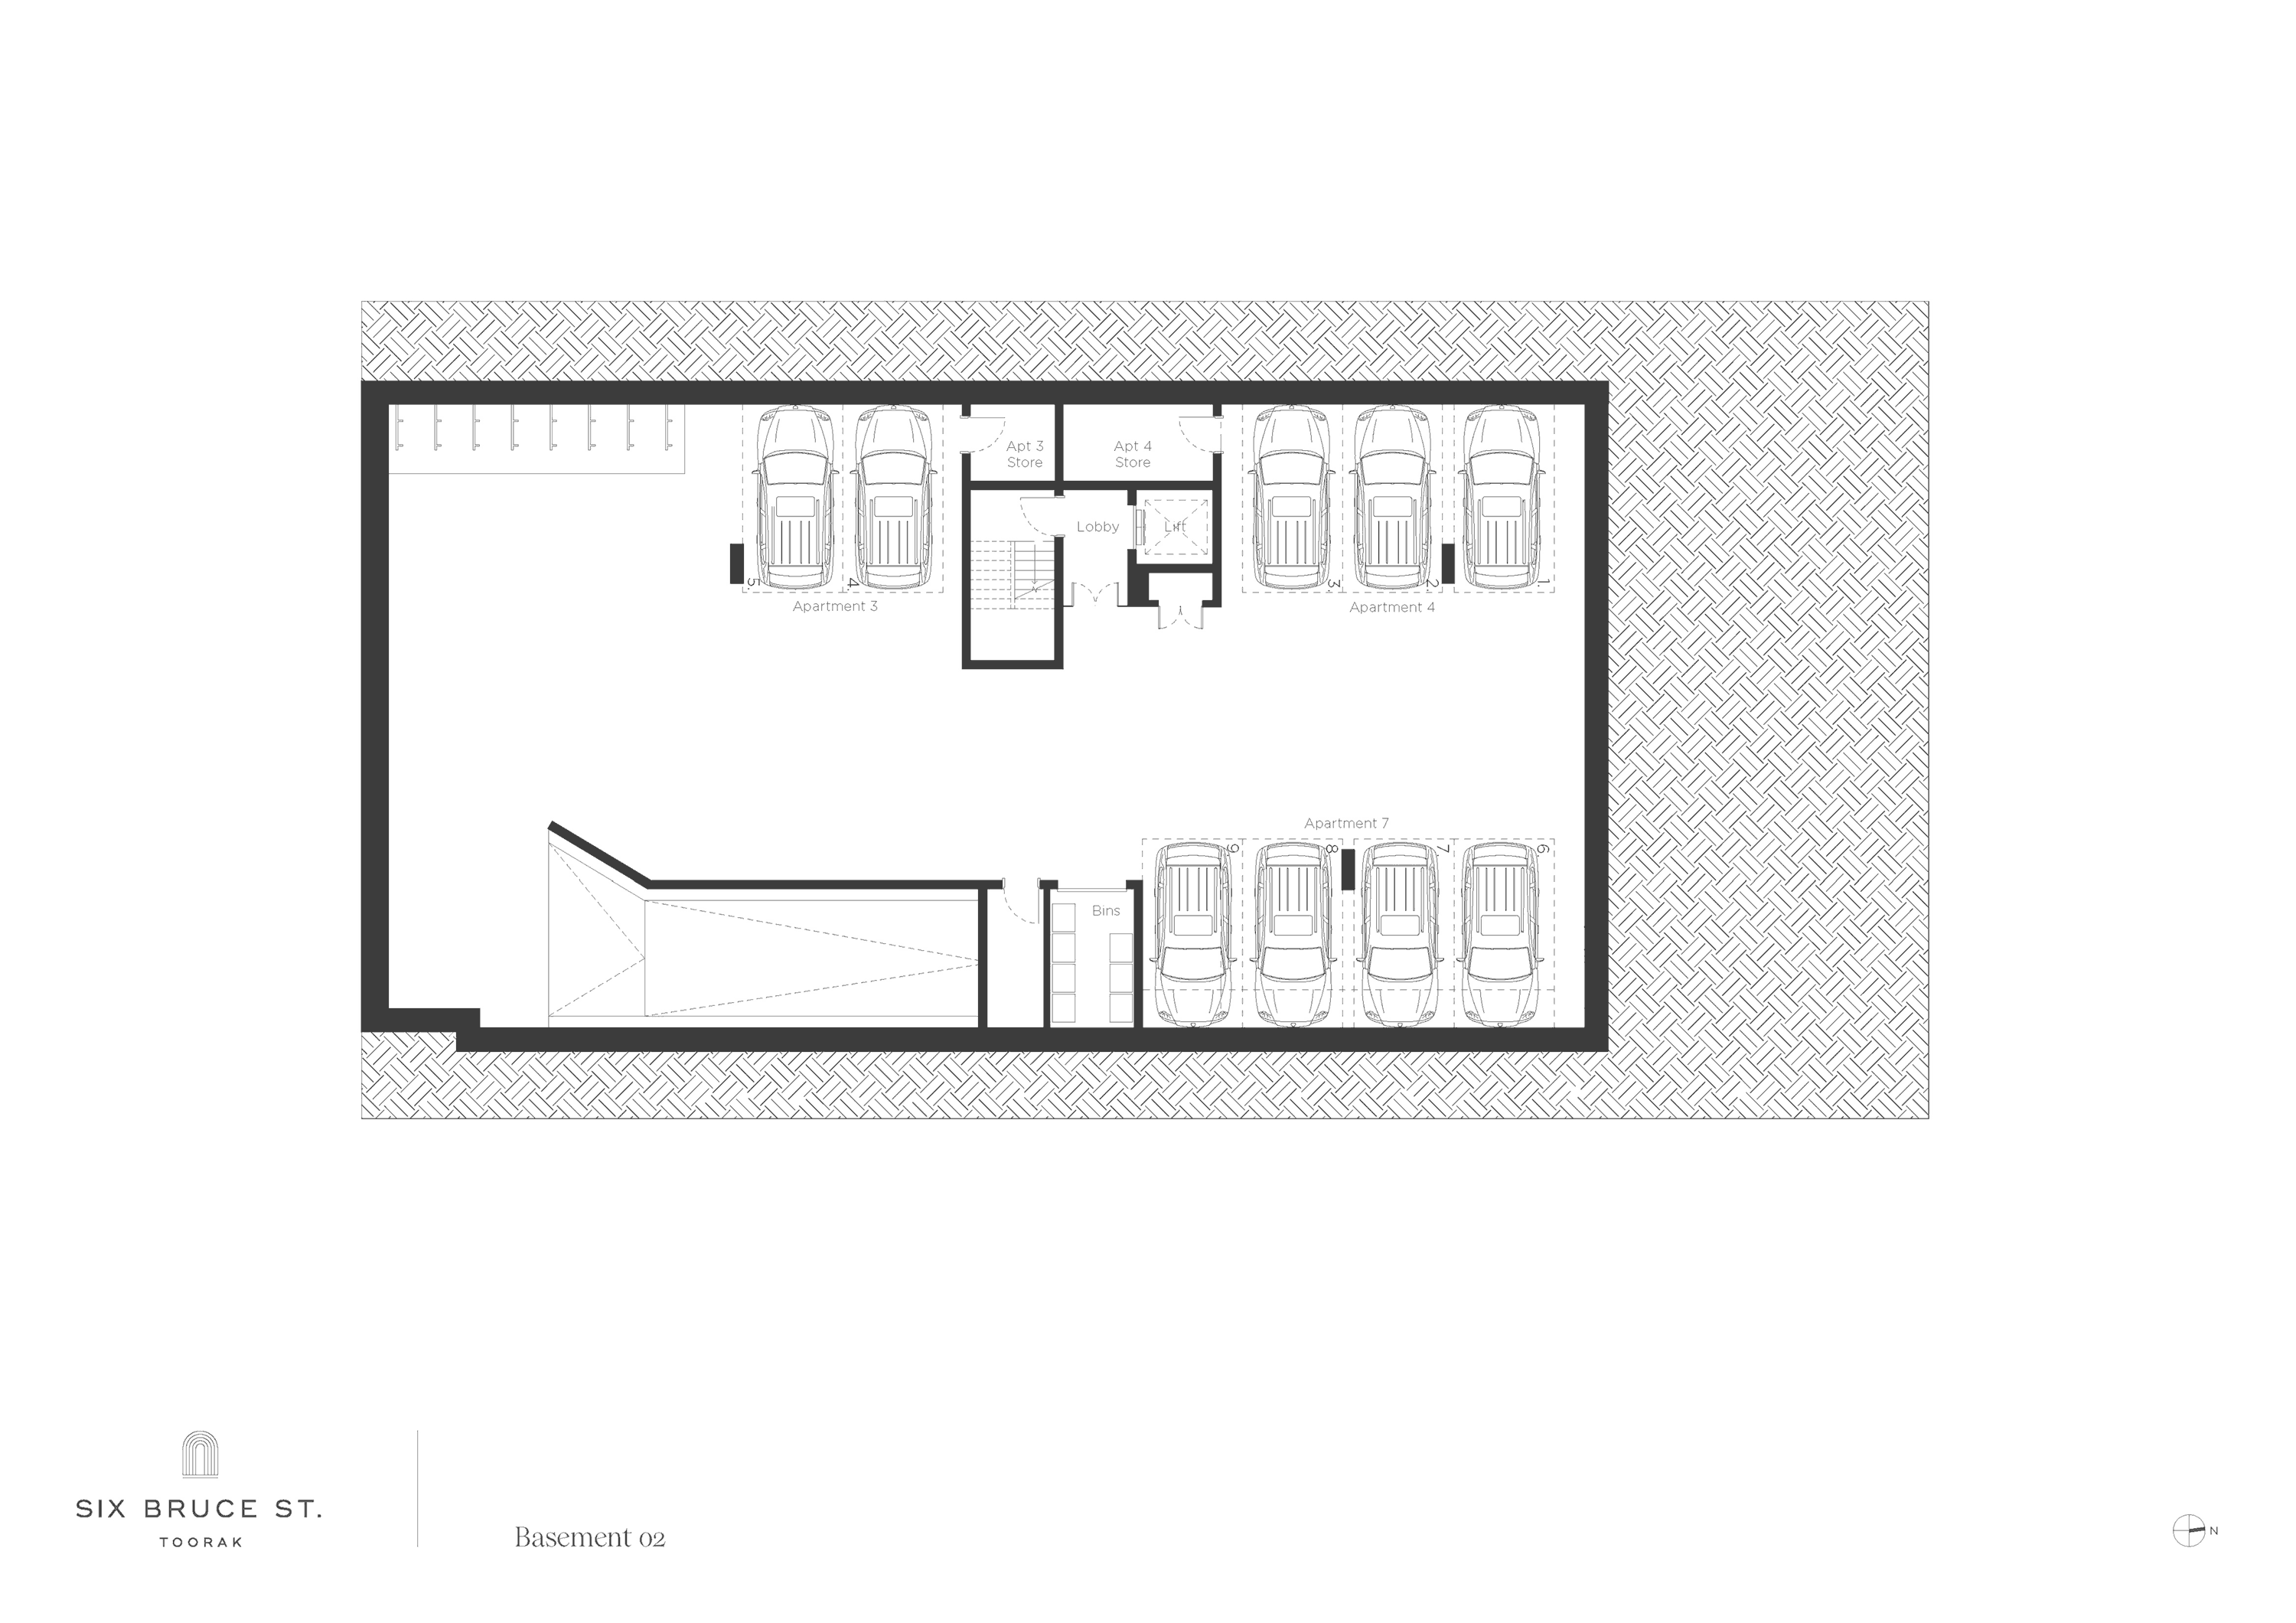 Six Bruce Street - Floor Plan – Basement 1